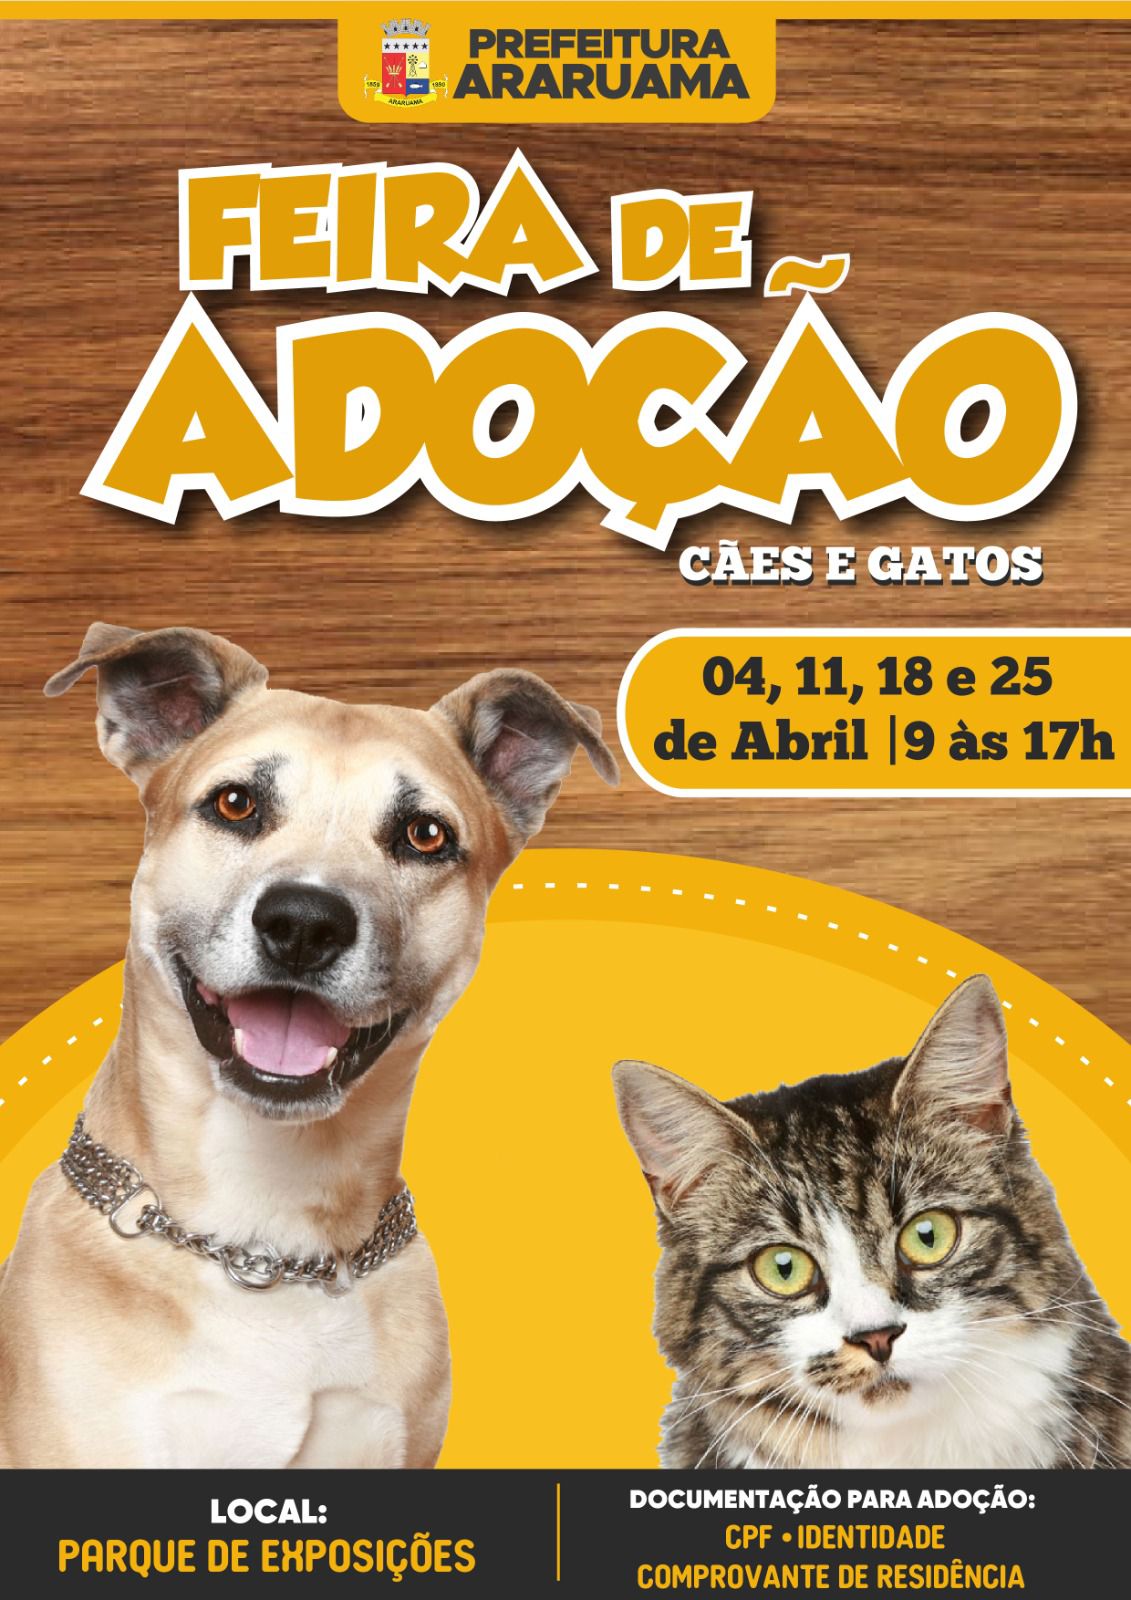 Prefeitura de Araruama vai realizar a Feira de Adoção de cães e gatos no Parque de Exposição Agropecuário